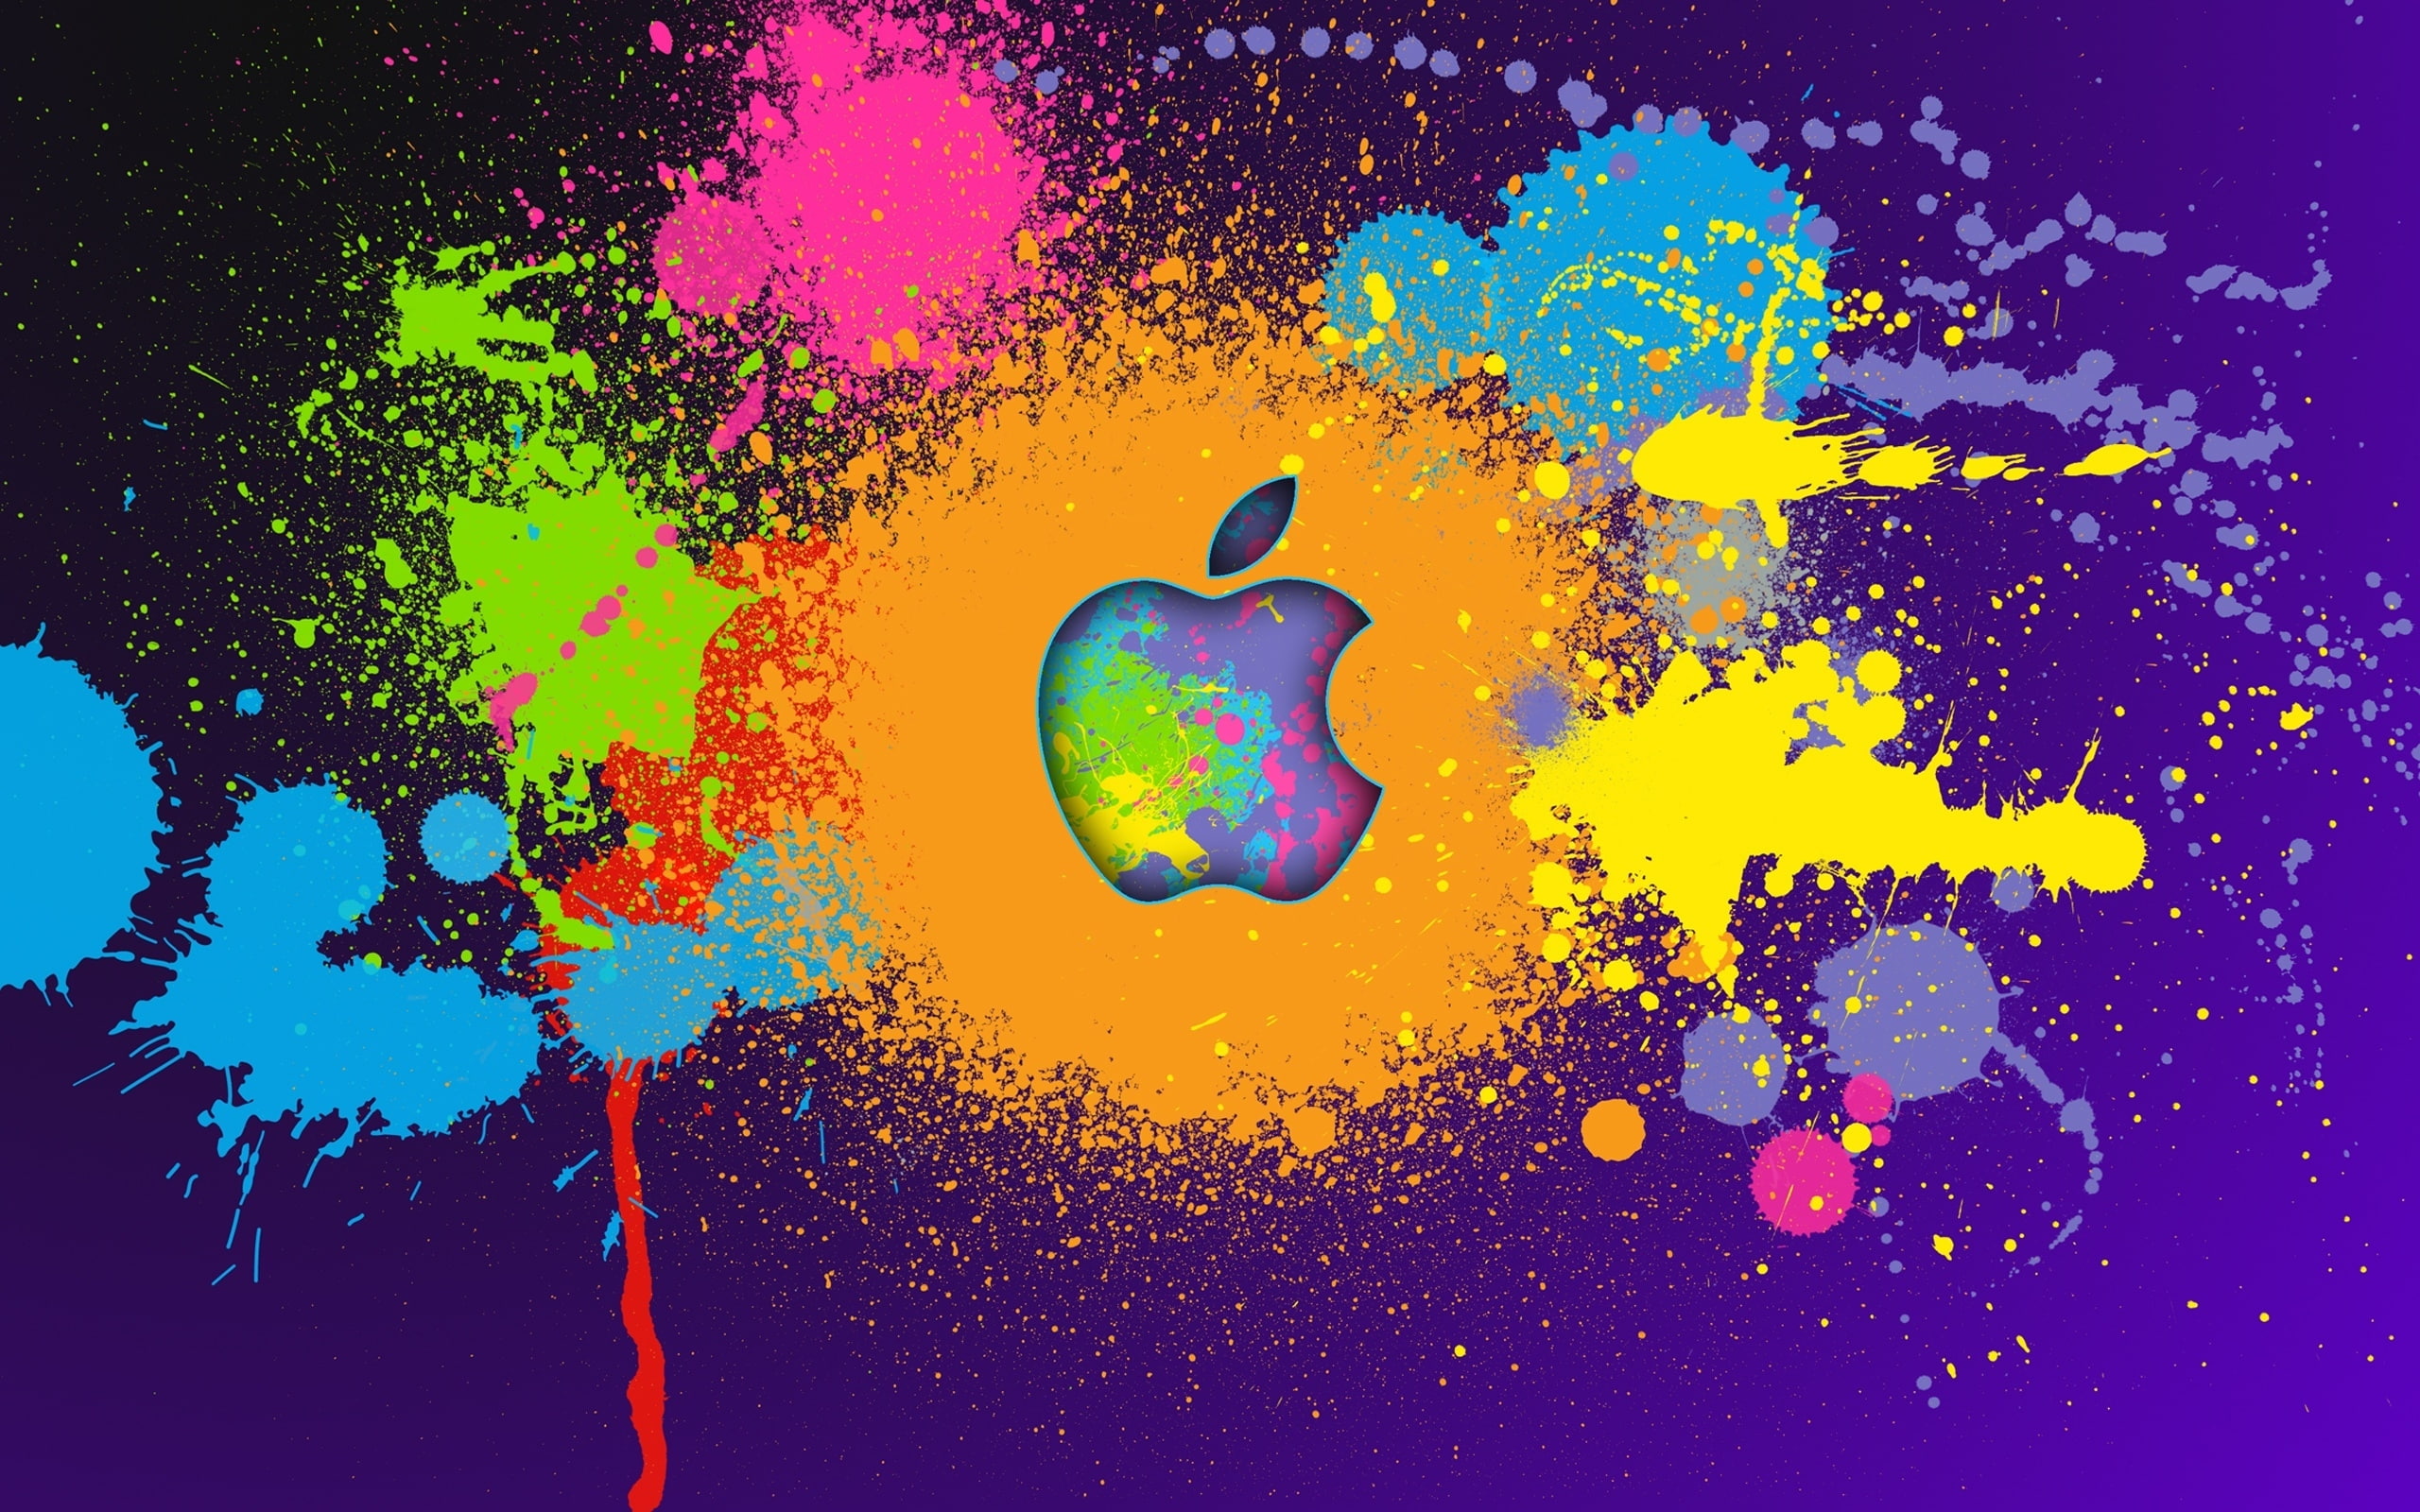 Apple iPad, apple brand logo